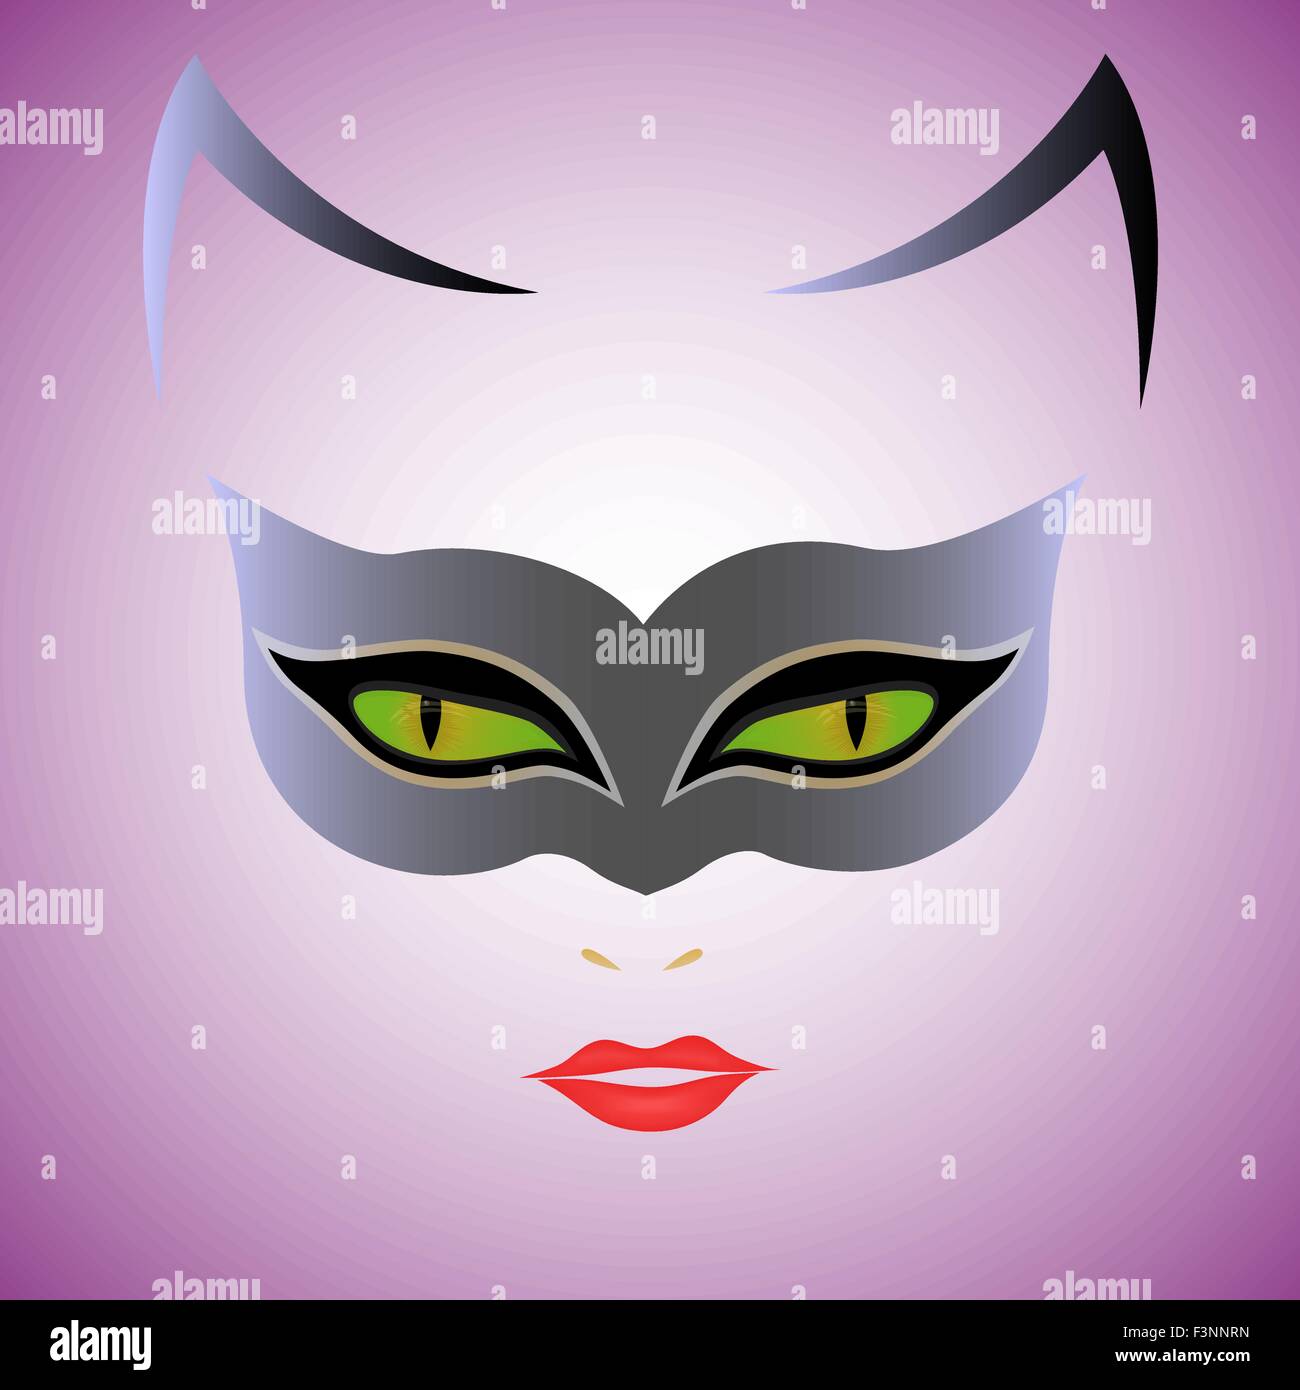 Femme chat aux yeux verts en masque sur fond violet, dessin à la main  vector illustration Image Vectorielle Stock - Alamy